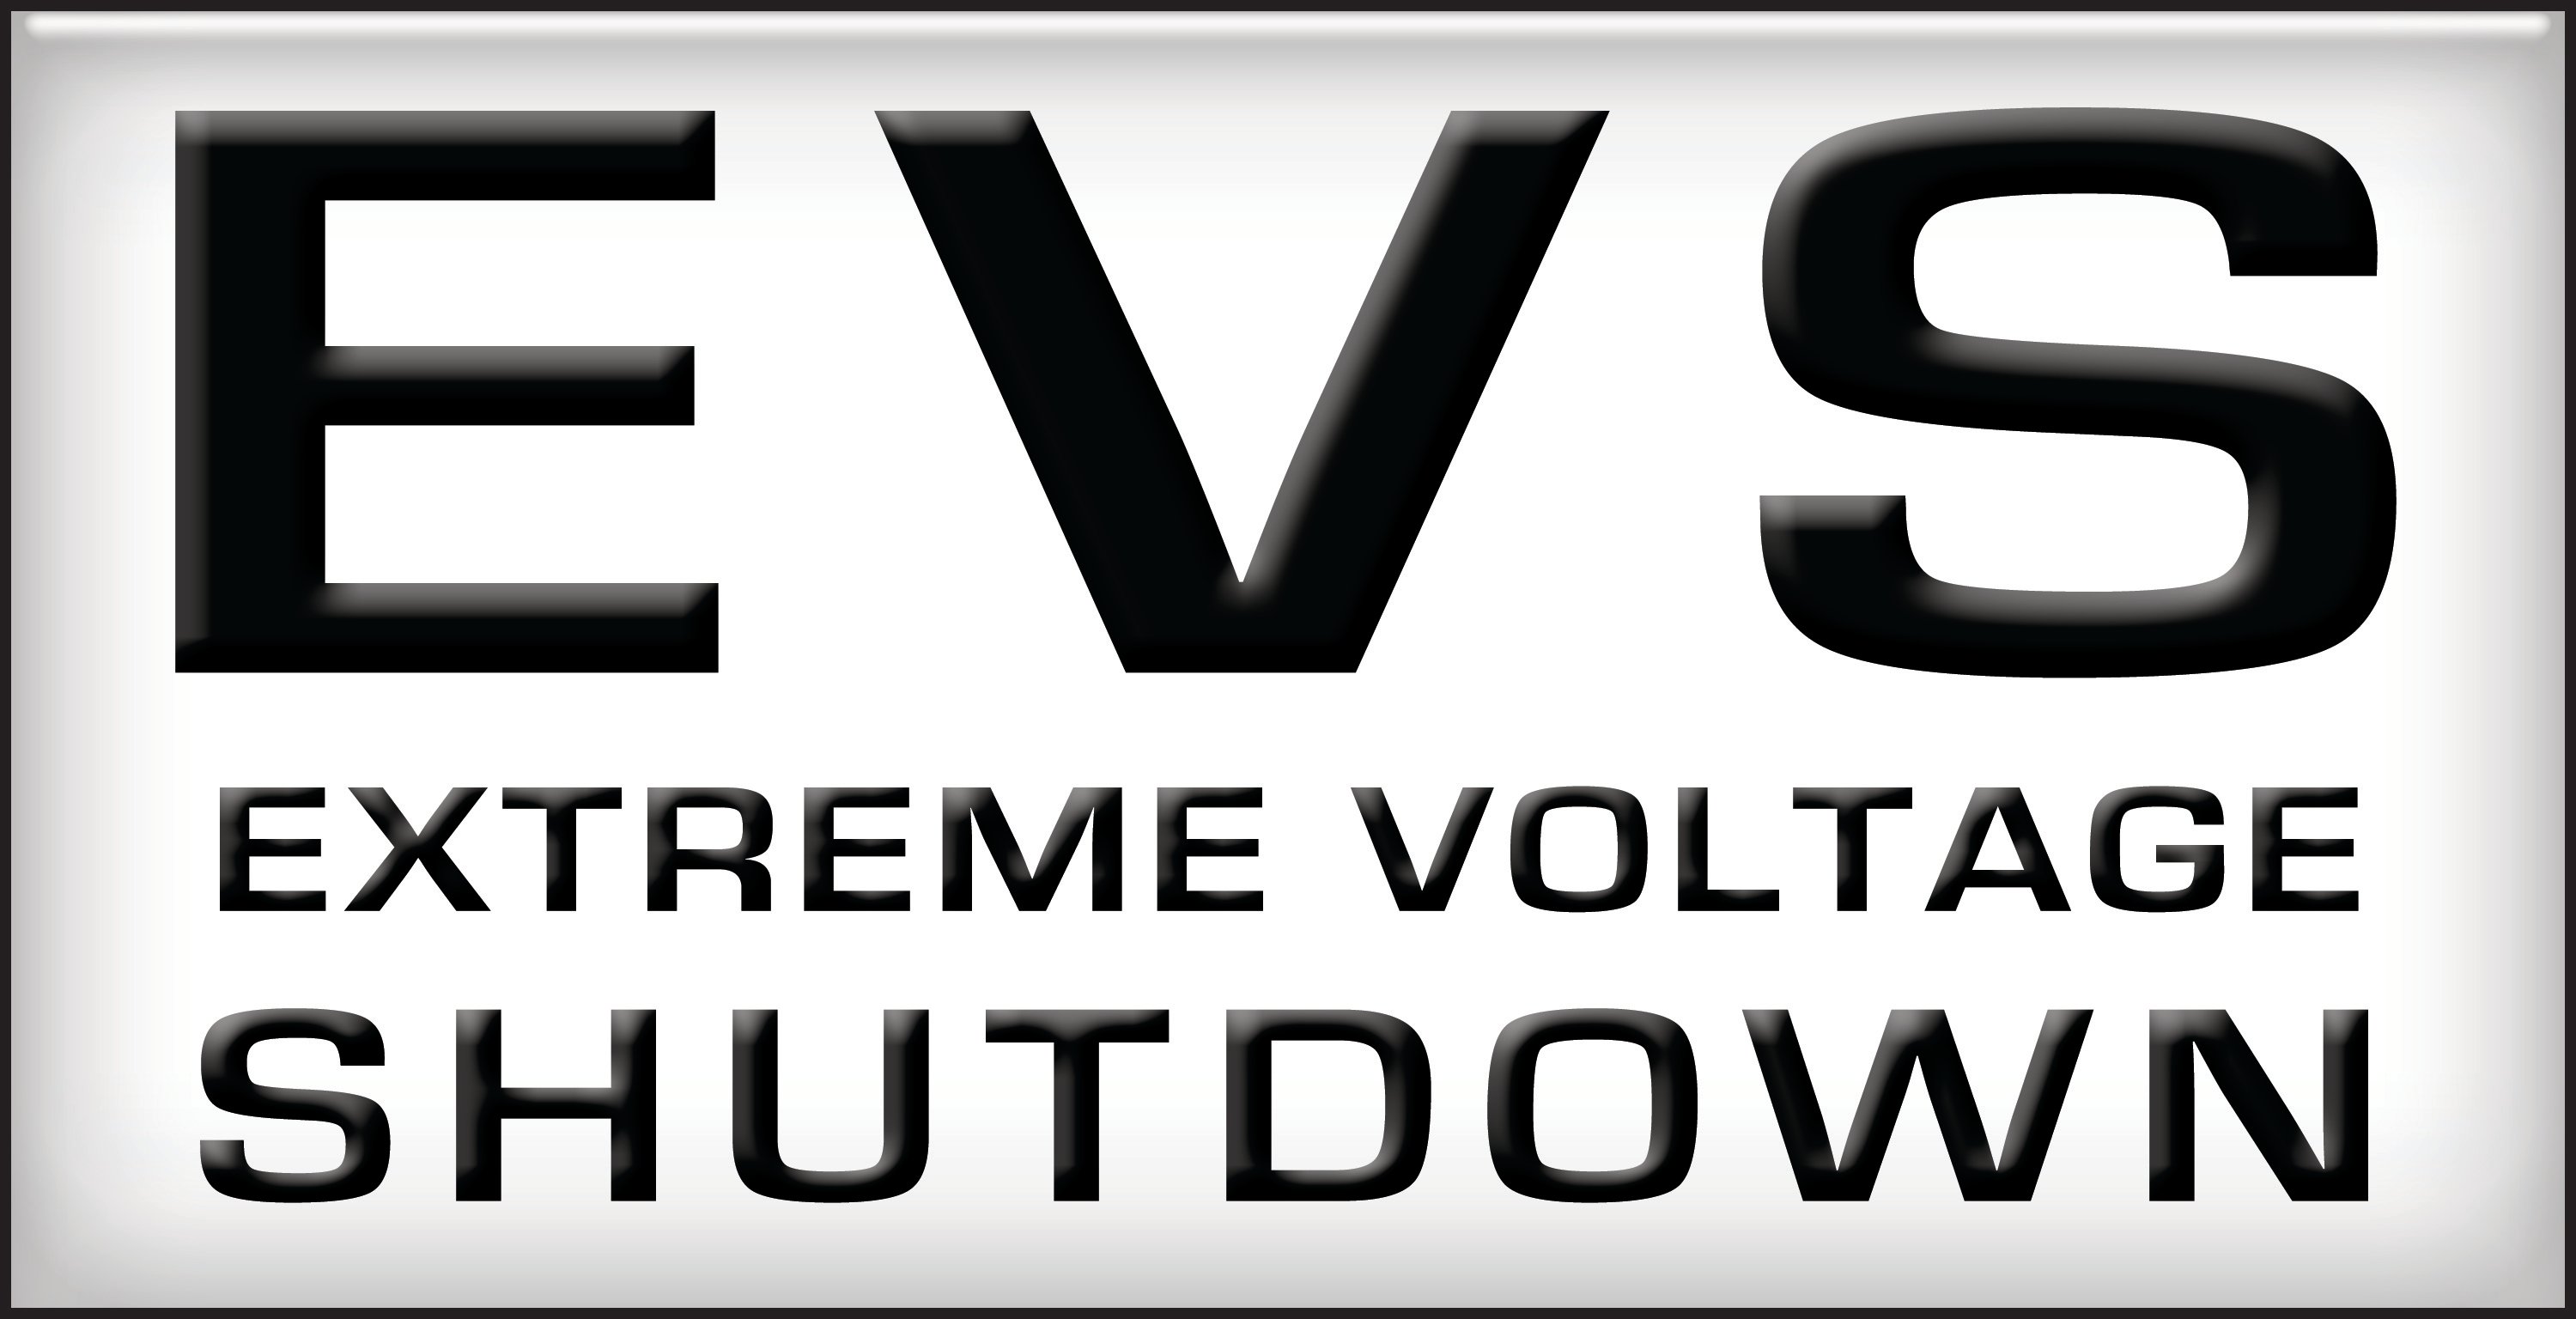 EVS (Extreme Voltage Shutdown) icon